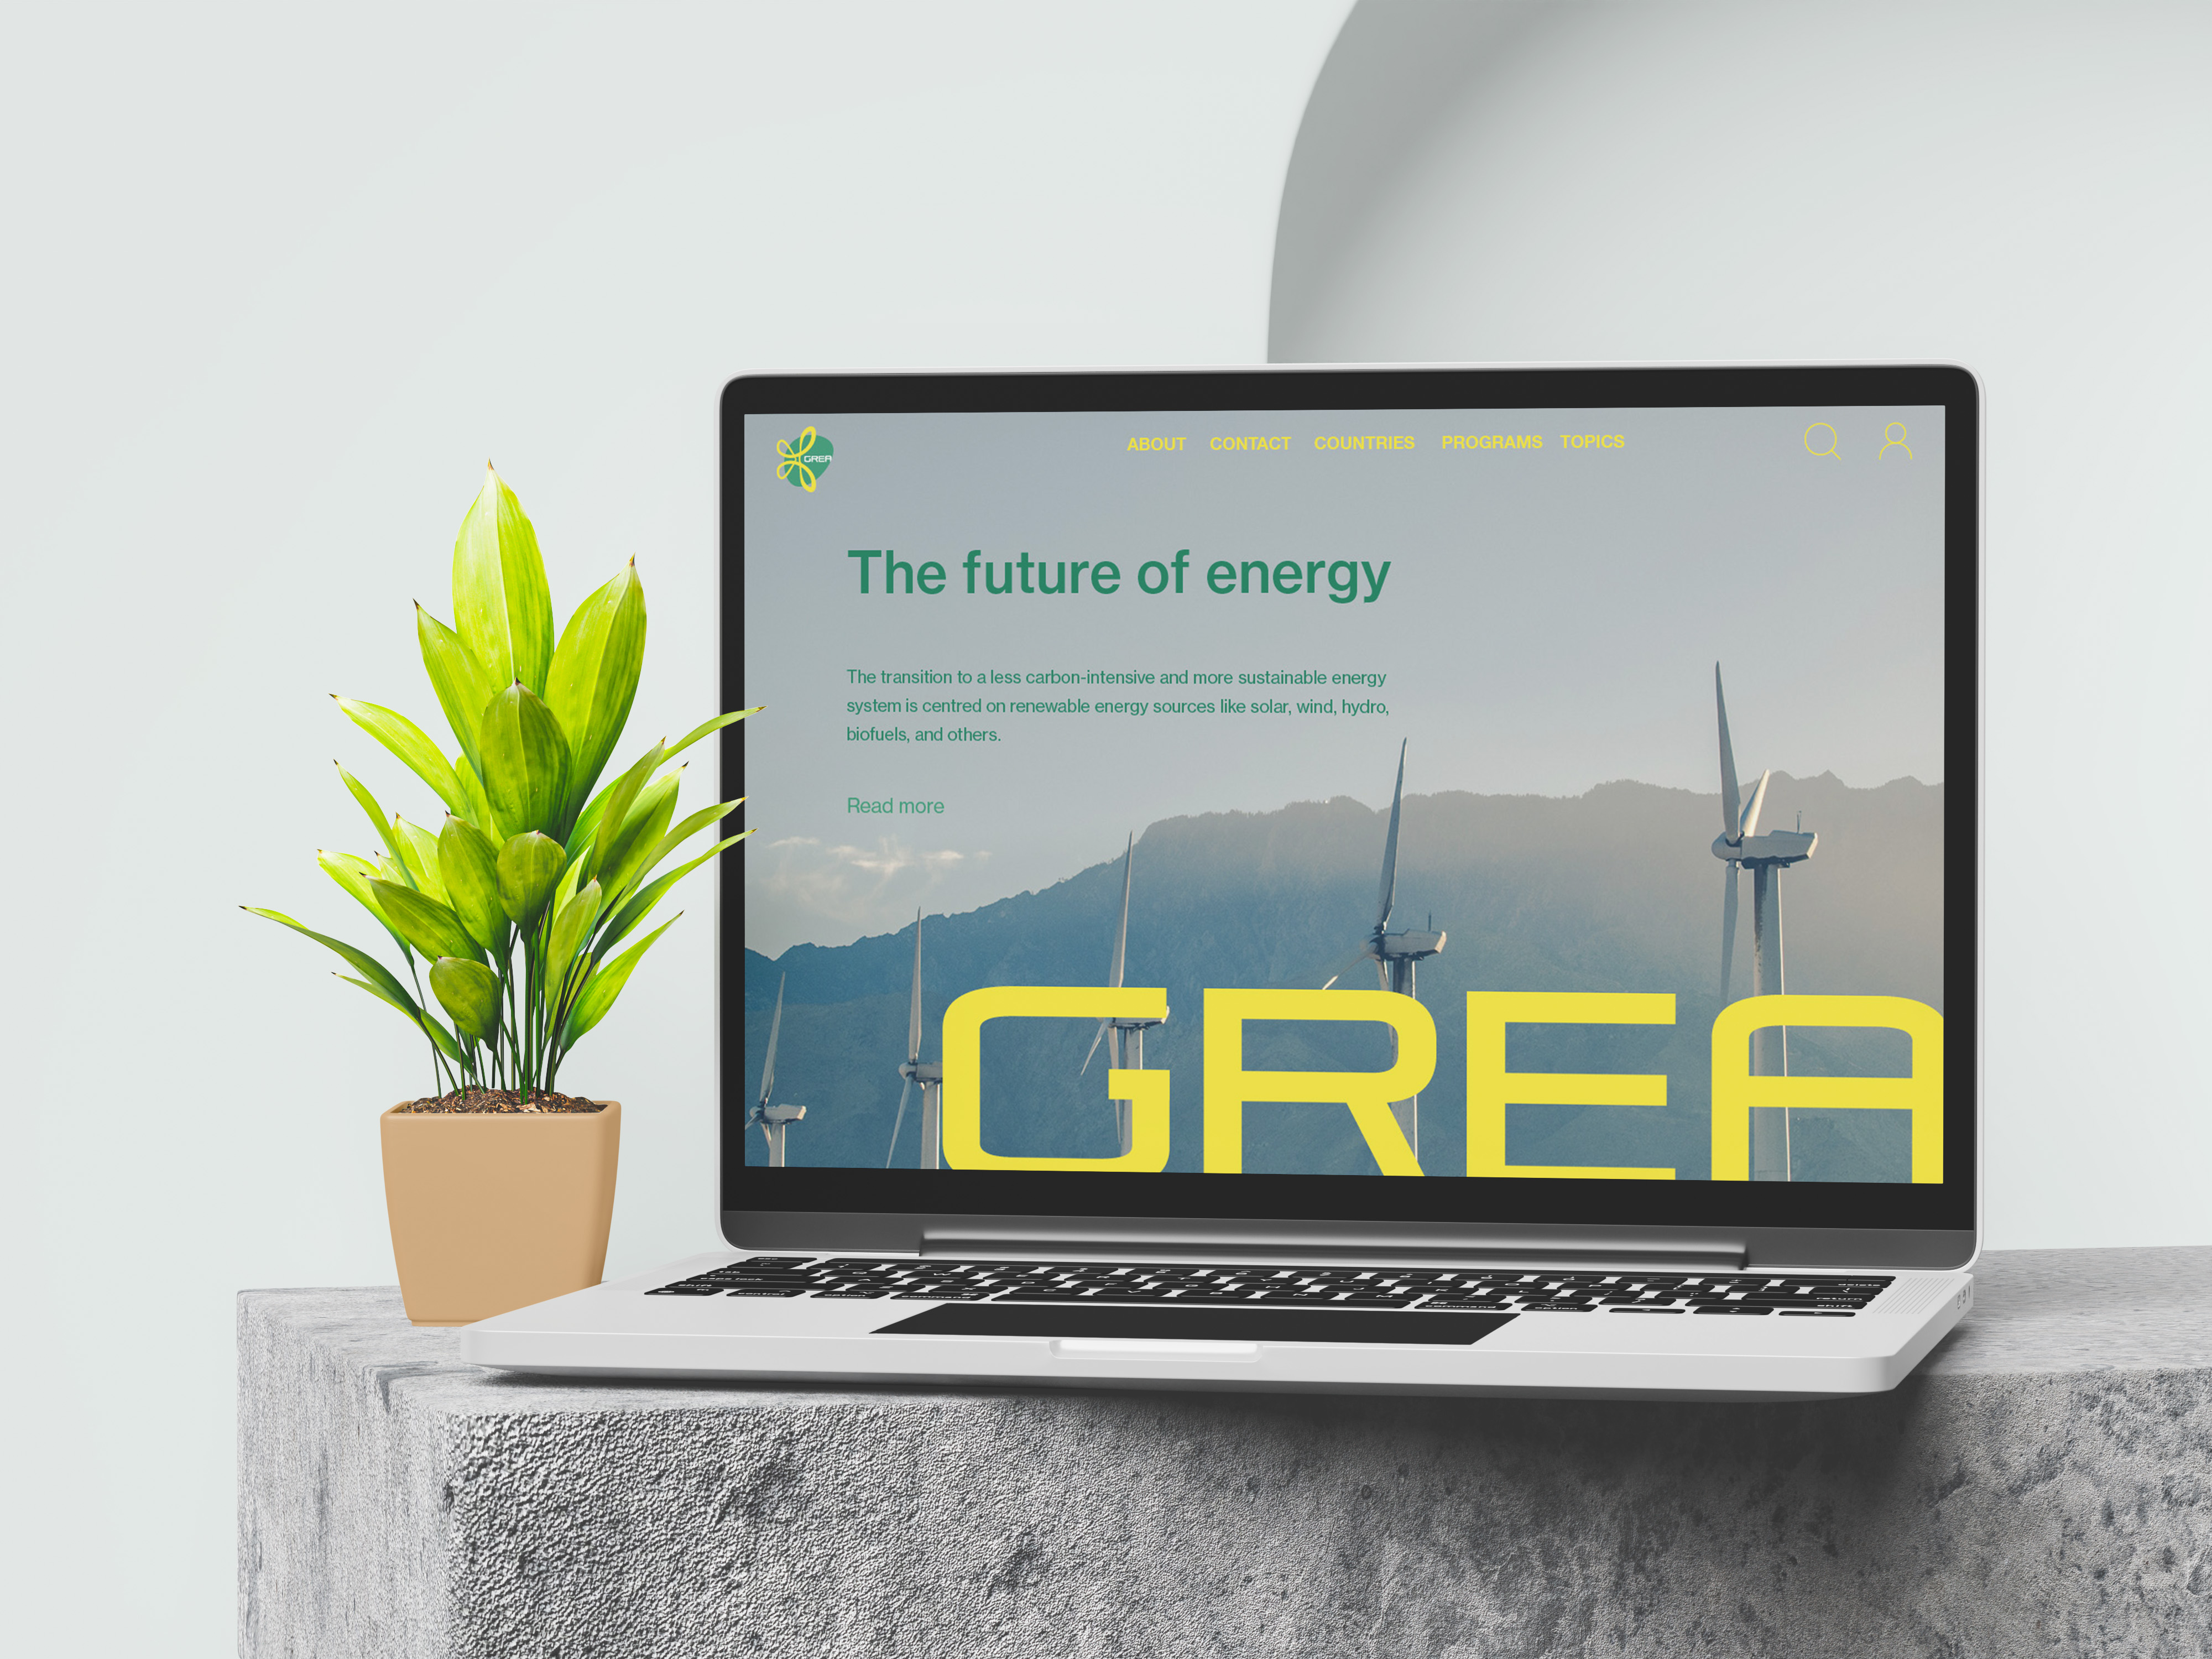 Global Renewable Energy Agency(GREA)